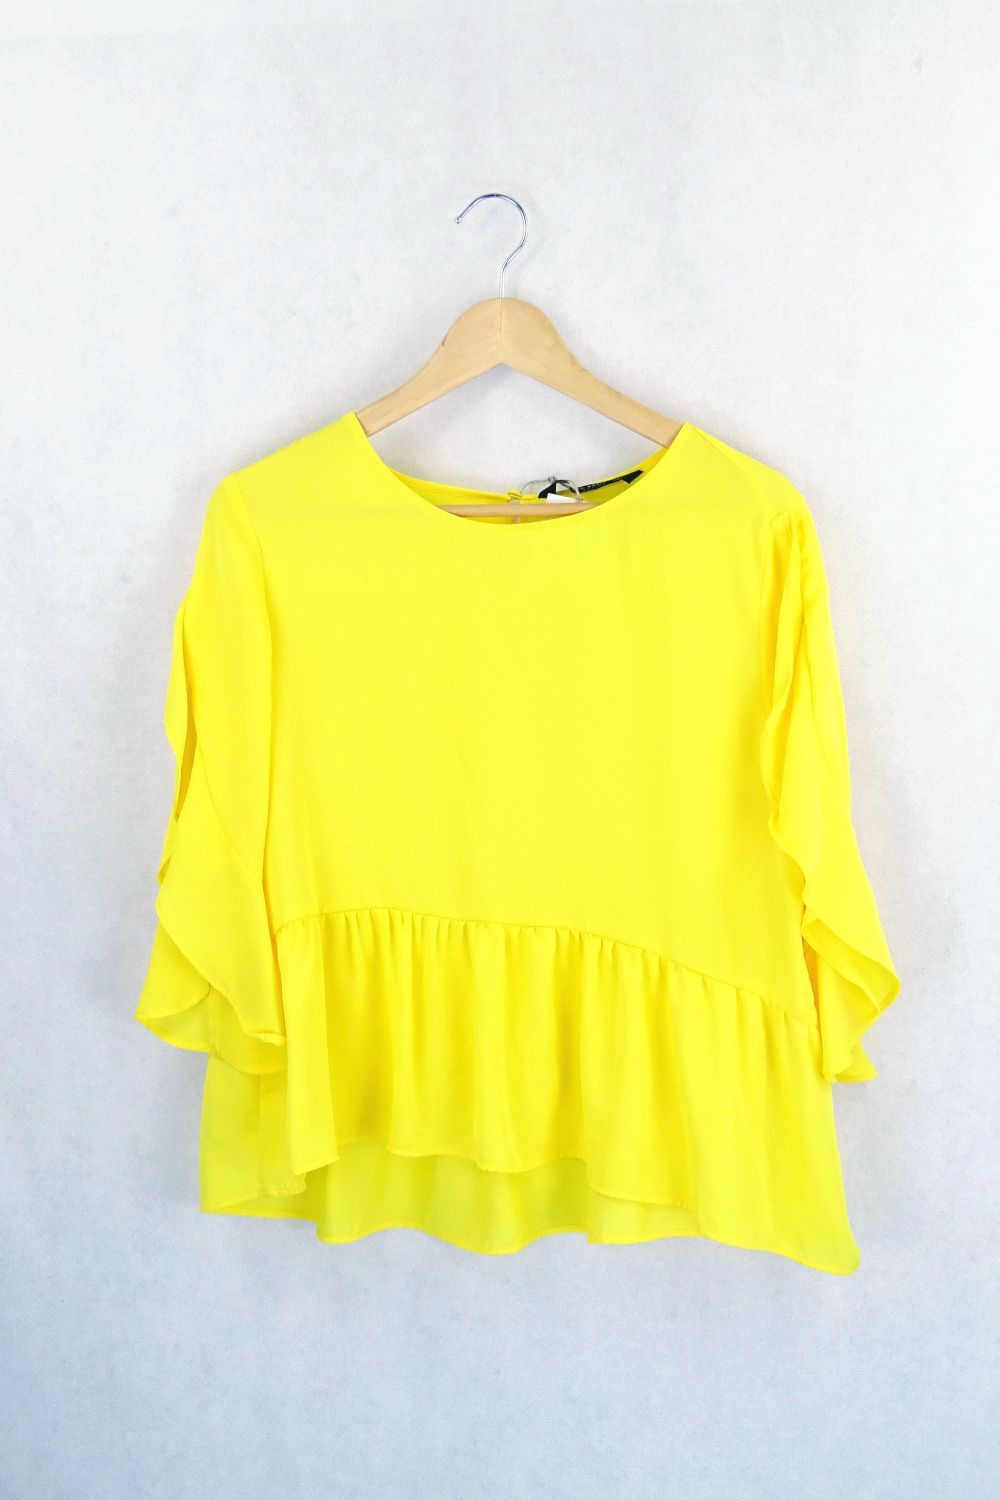 Zara Basic Yellow Blouse L